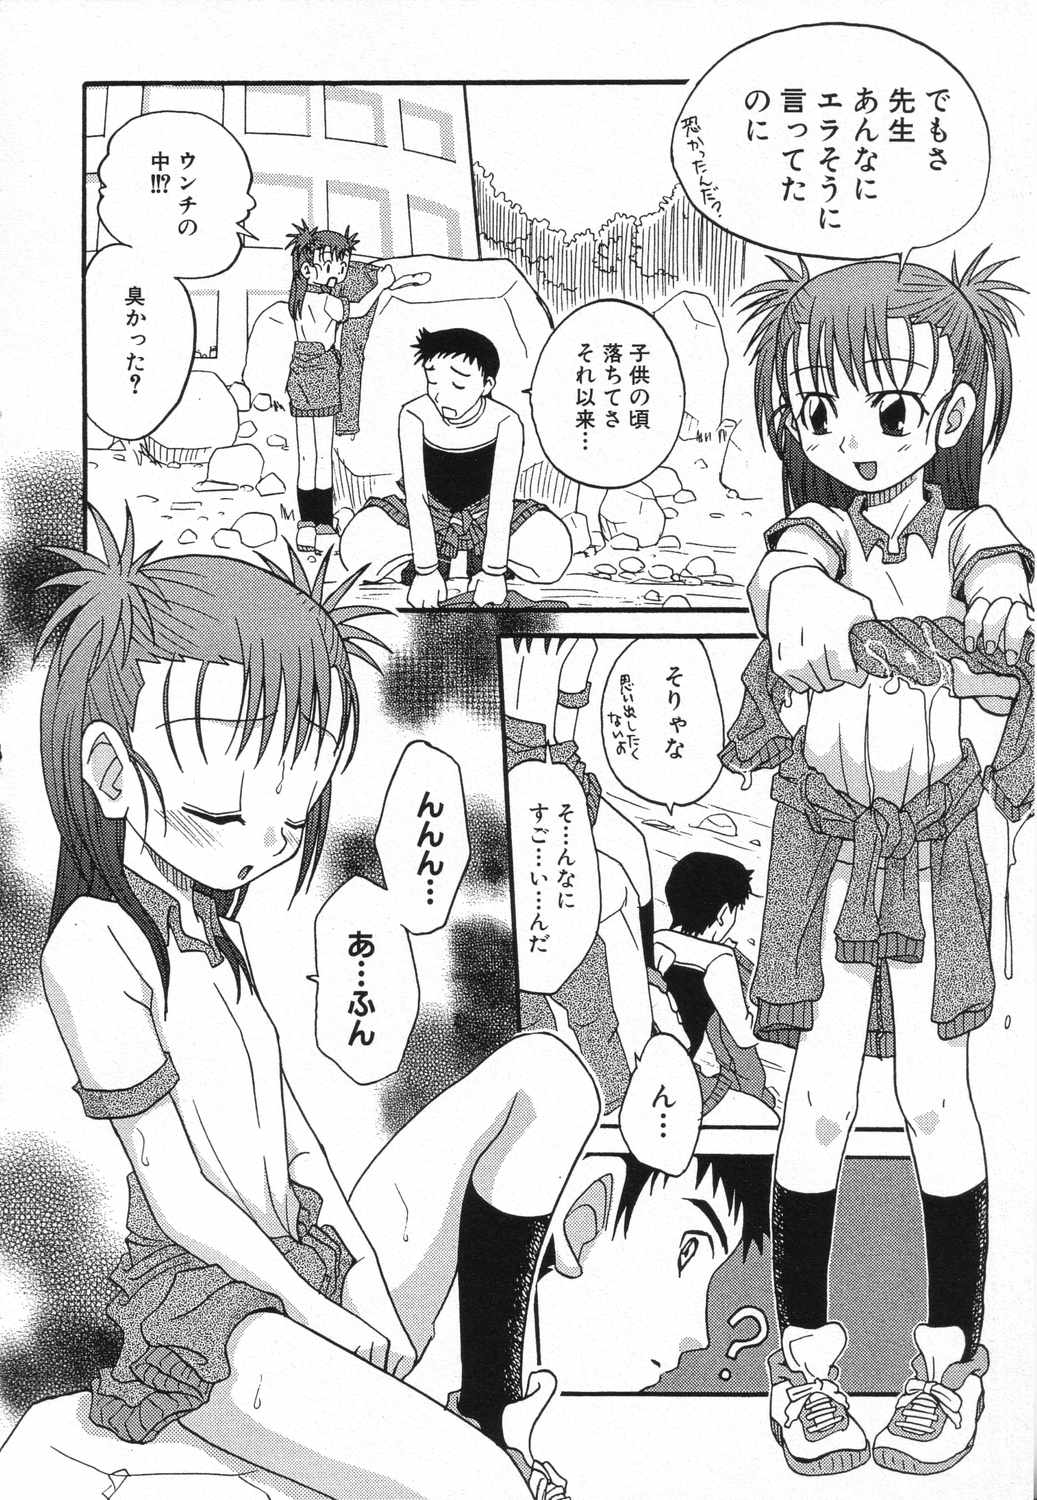 [Anthology] LOCO vol.5 Aki no Omorashi Musume Tokushuu page 45 full